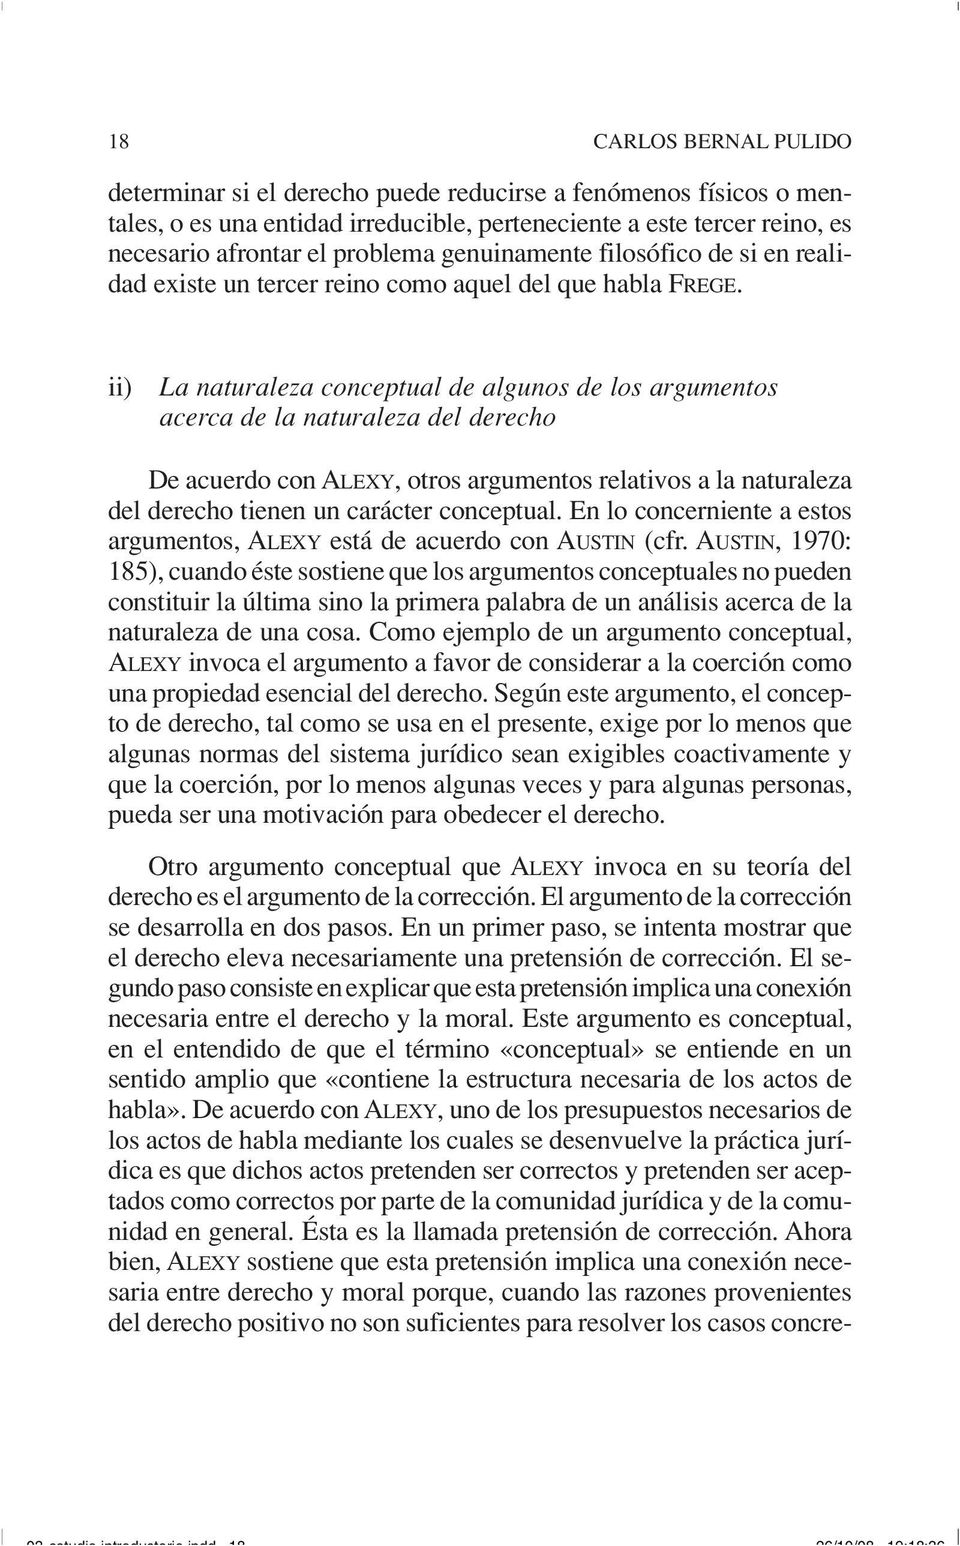 ii) La naturaleza conceptual de algunos de los argumentos acerca de la naturaleza del derecho De acuerdo con ALEXY, otros argumentos relativos a la naturaleza del derecho tienen un carácter